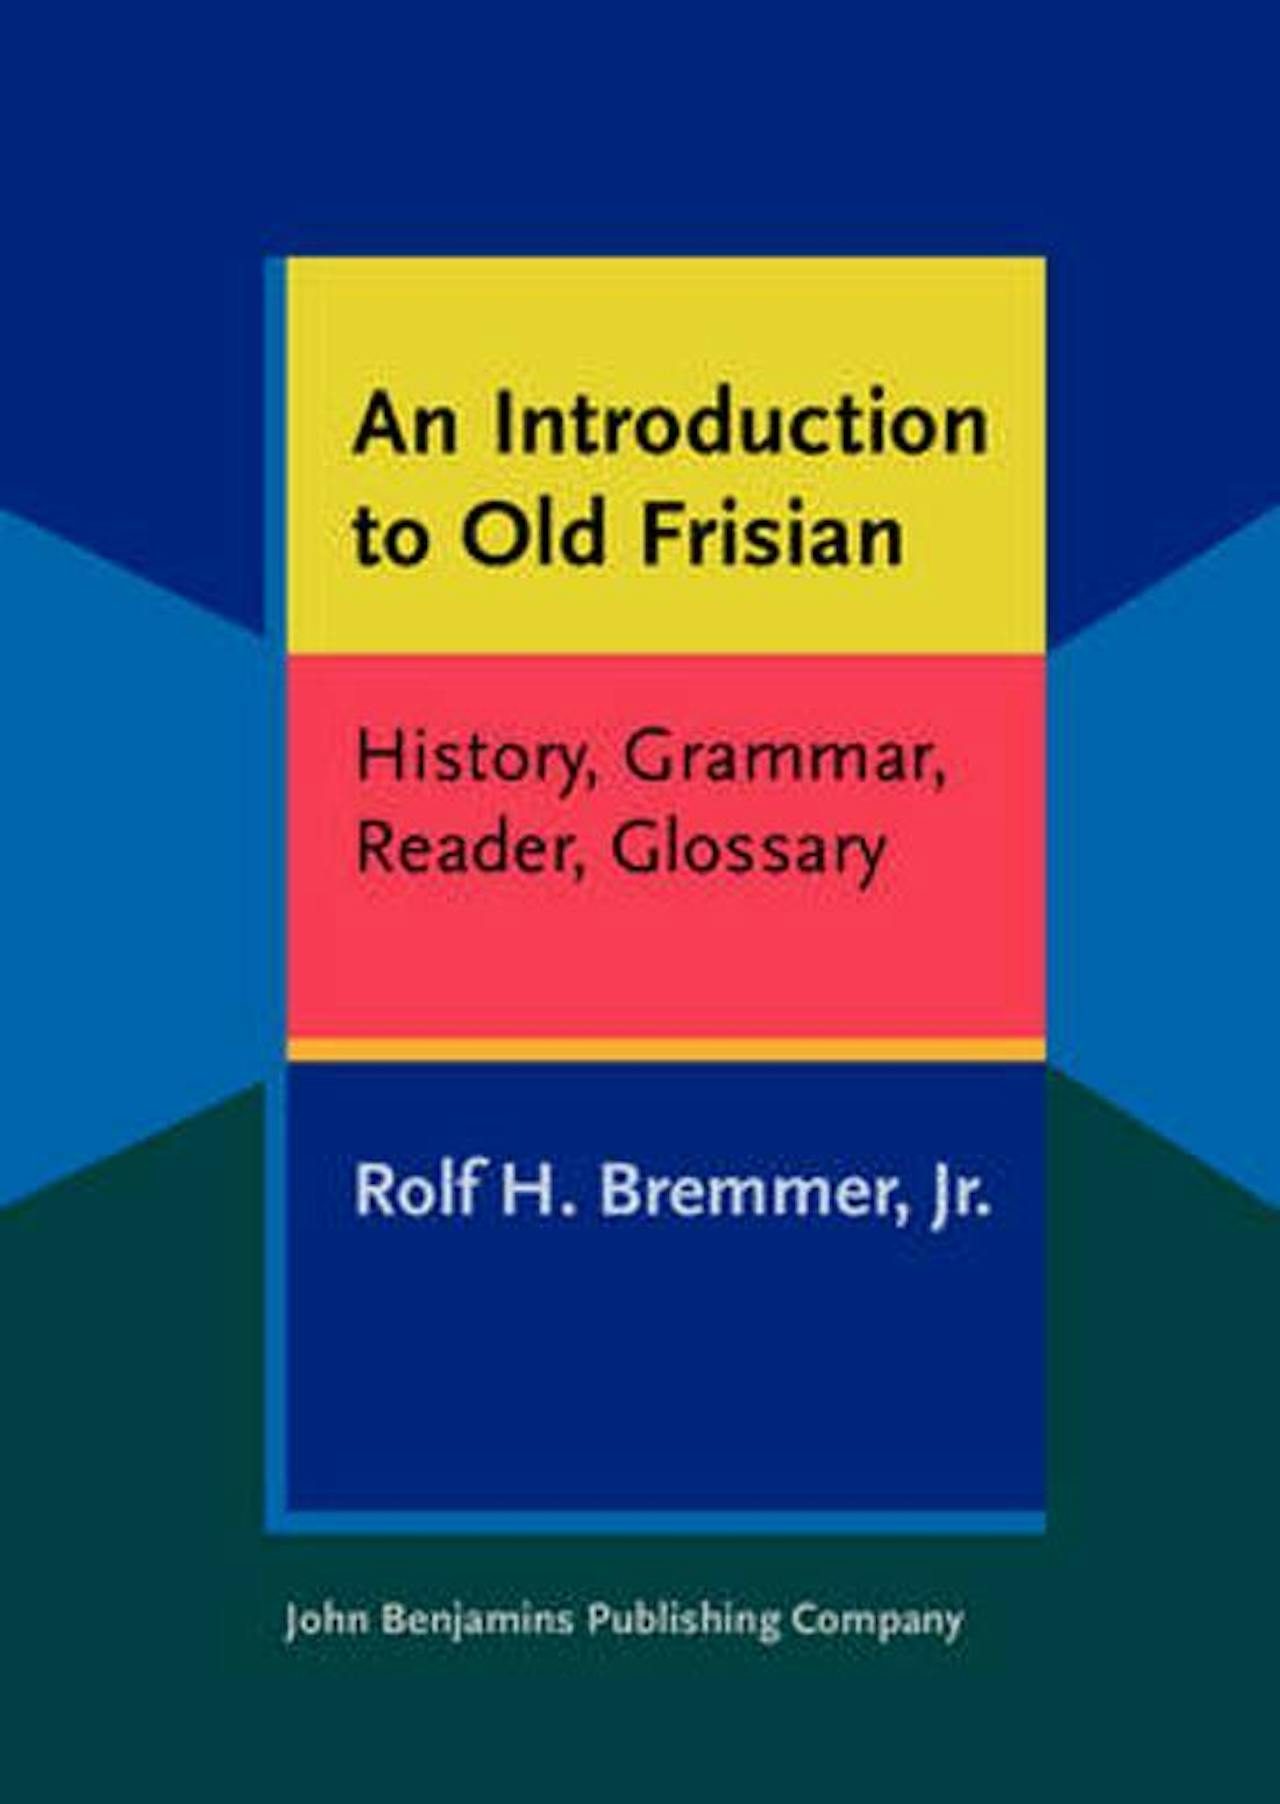 De cover van het boek 'An Introduction to Old Frisian' van Rolf H. Bremmer, Jr.